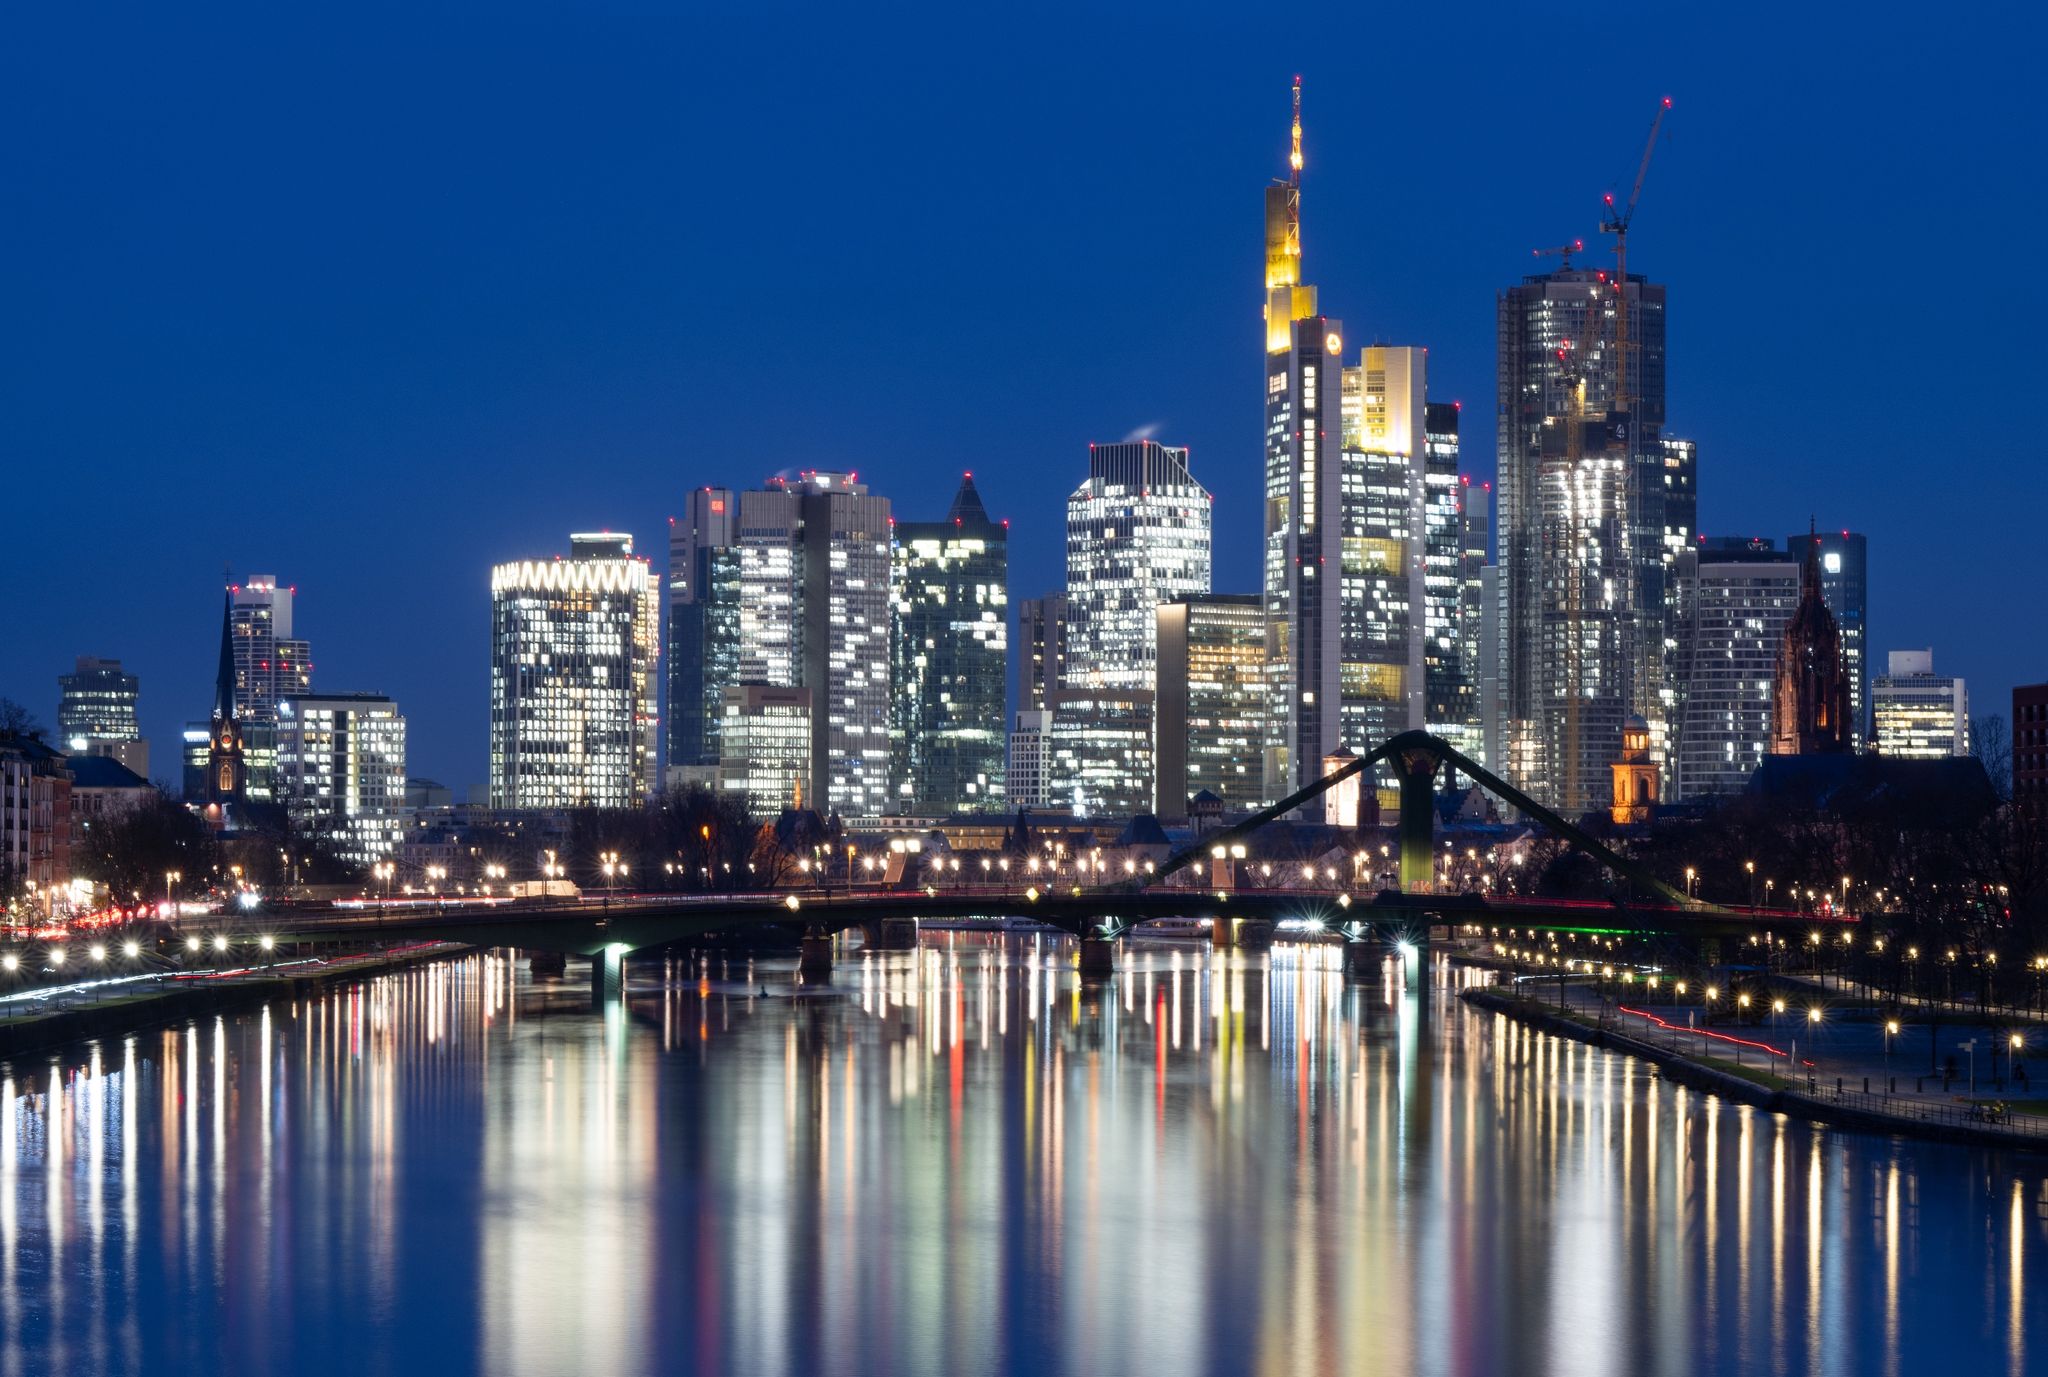 Die Lichter der Bankenskyline von Frankfurt am Main leuchten im letzten Licht des Tages.